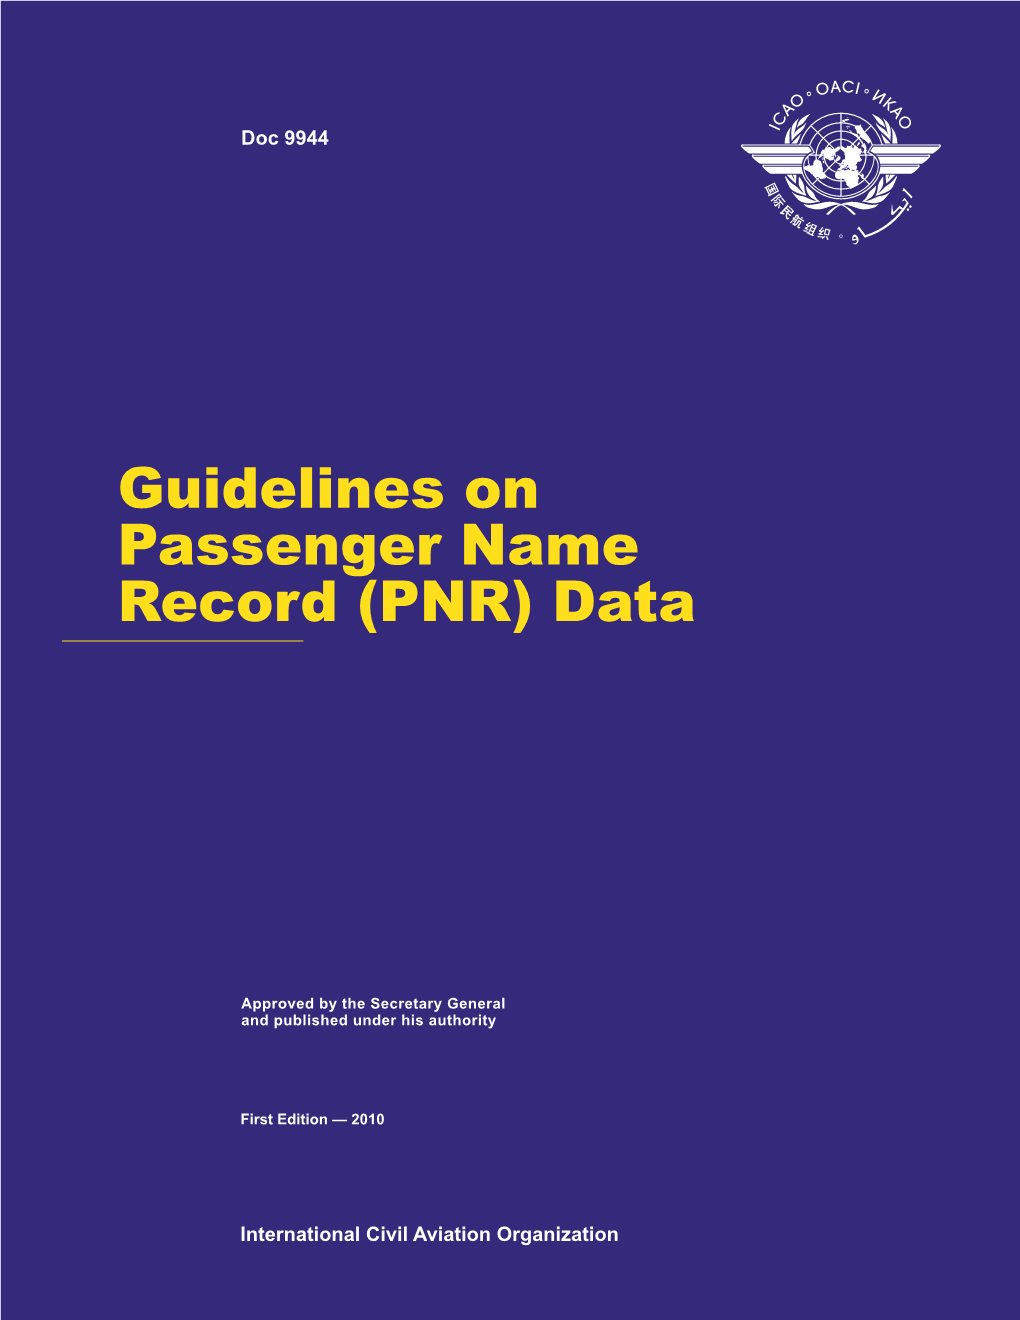 Guidelines on Passenger Name Record (PNR) Data